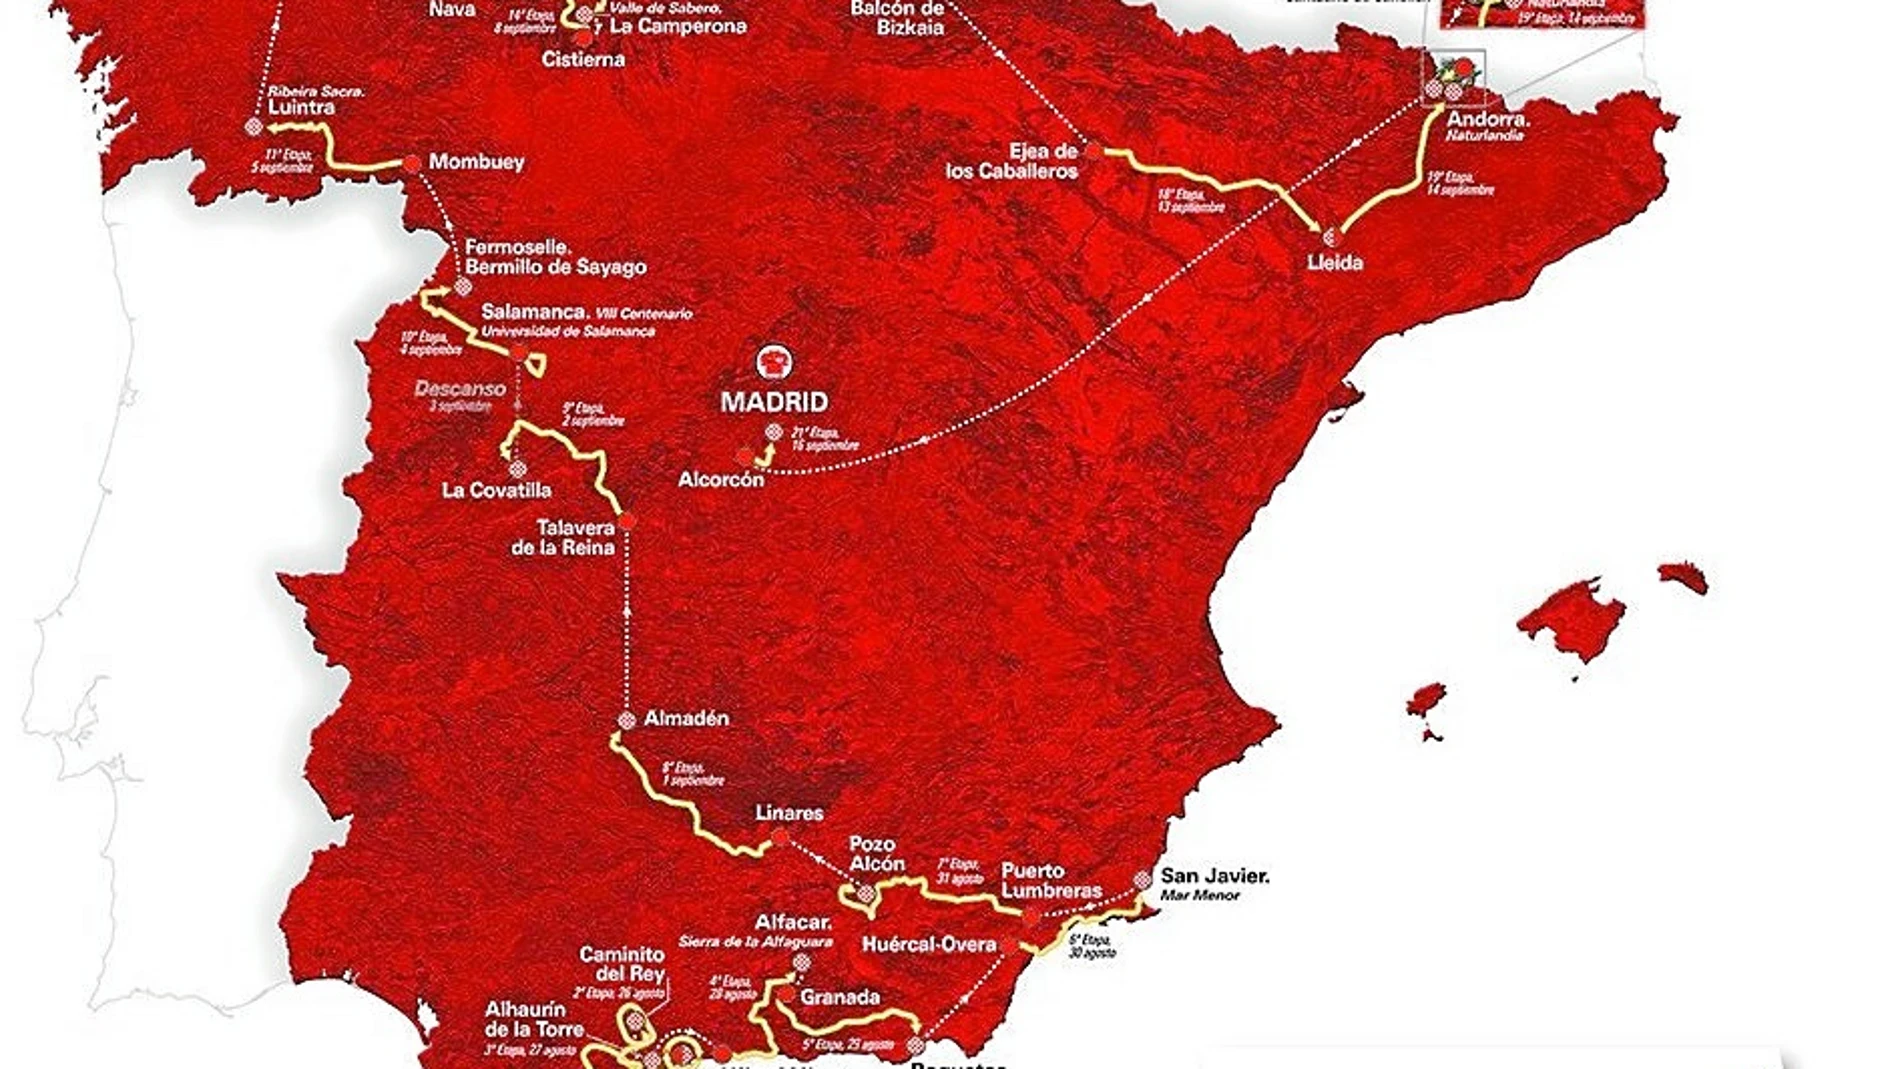 Entre el 25 de agosto y el 16 de septiembre se disputará la Vuelta